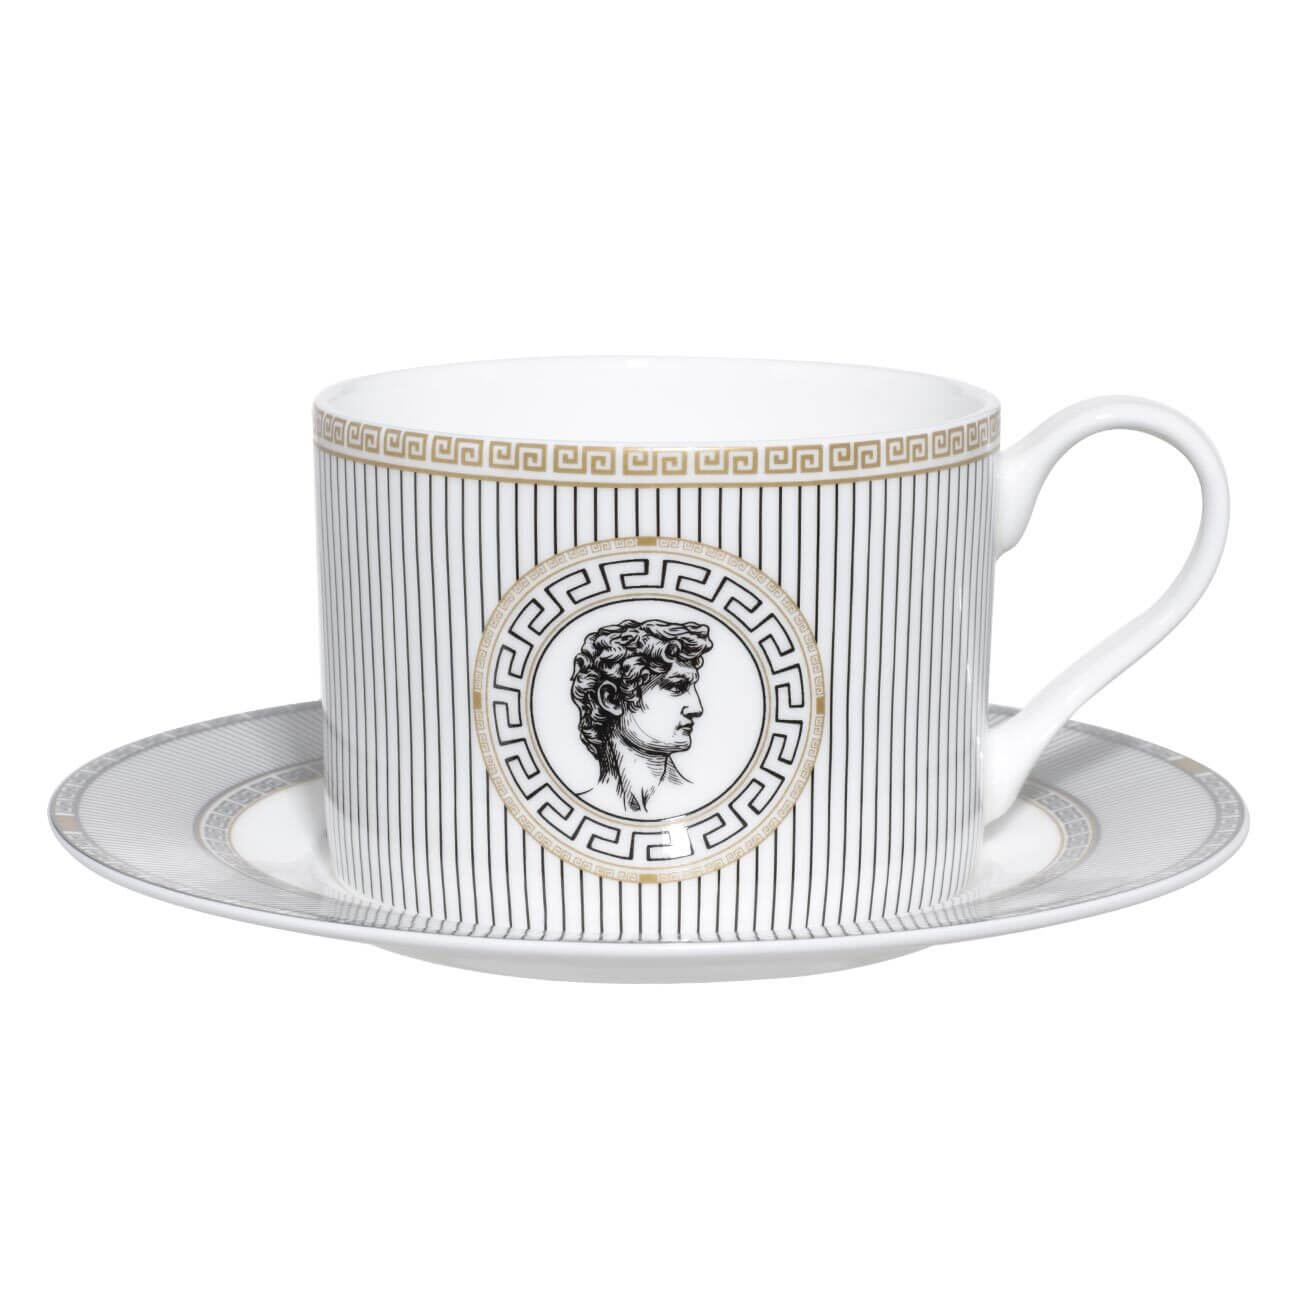 Пара чайная, 1 перс, 2 пр, 350 мл, фарфор F, бело-черная, Давид, Apollo изображение № 1